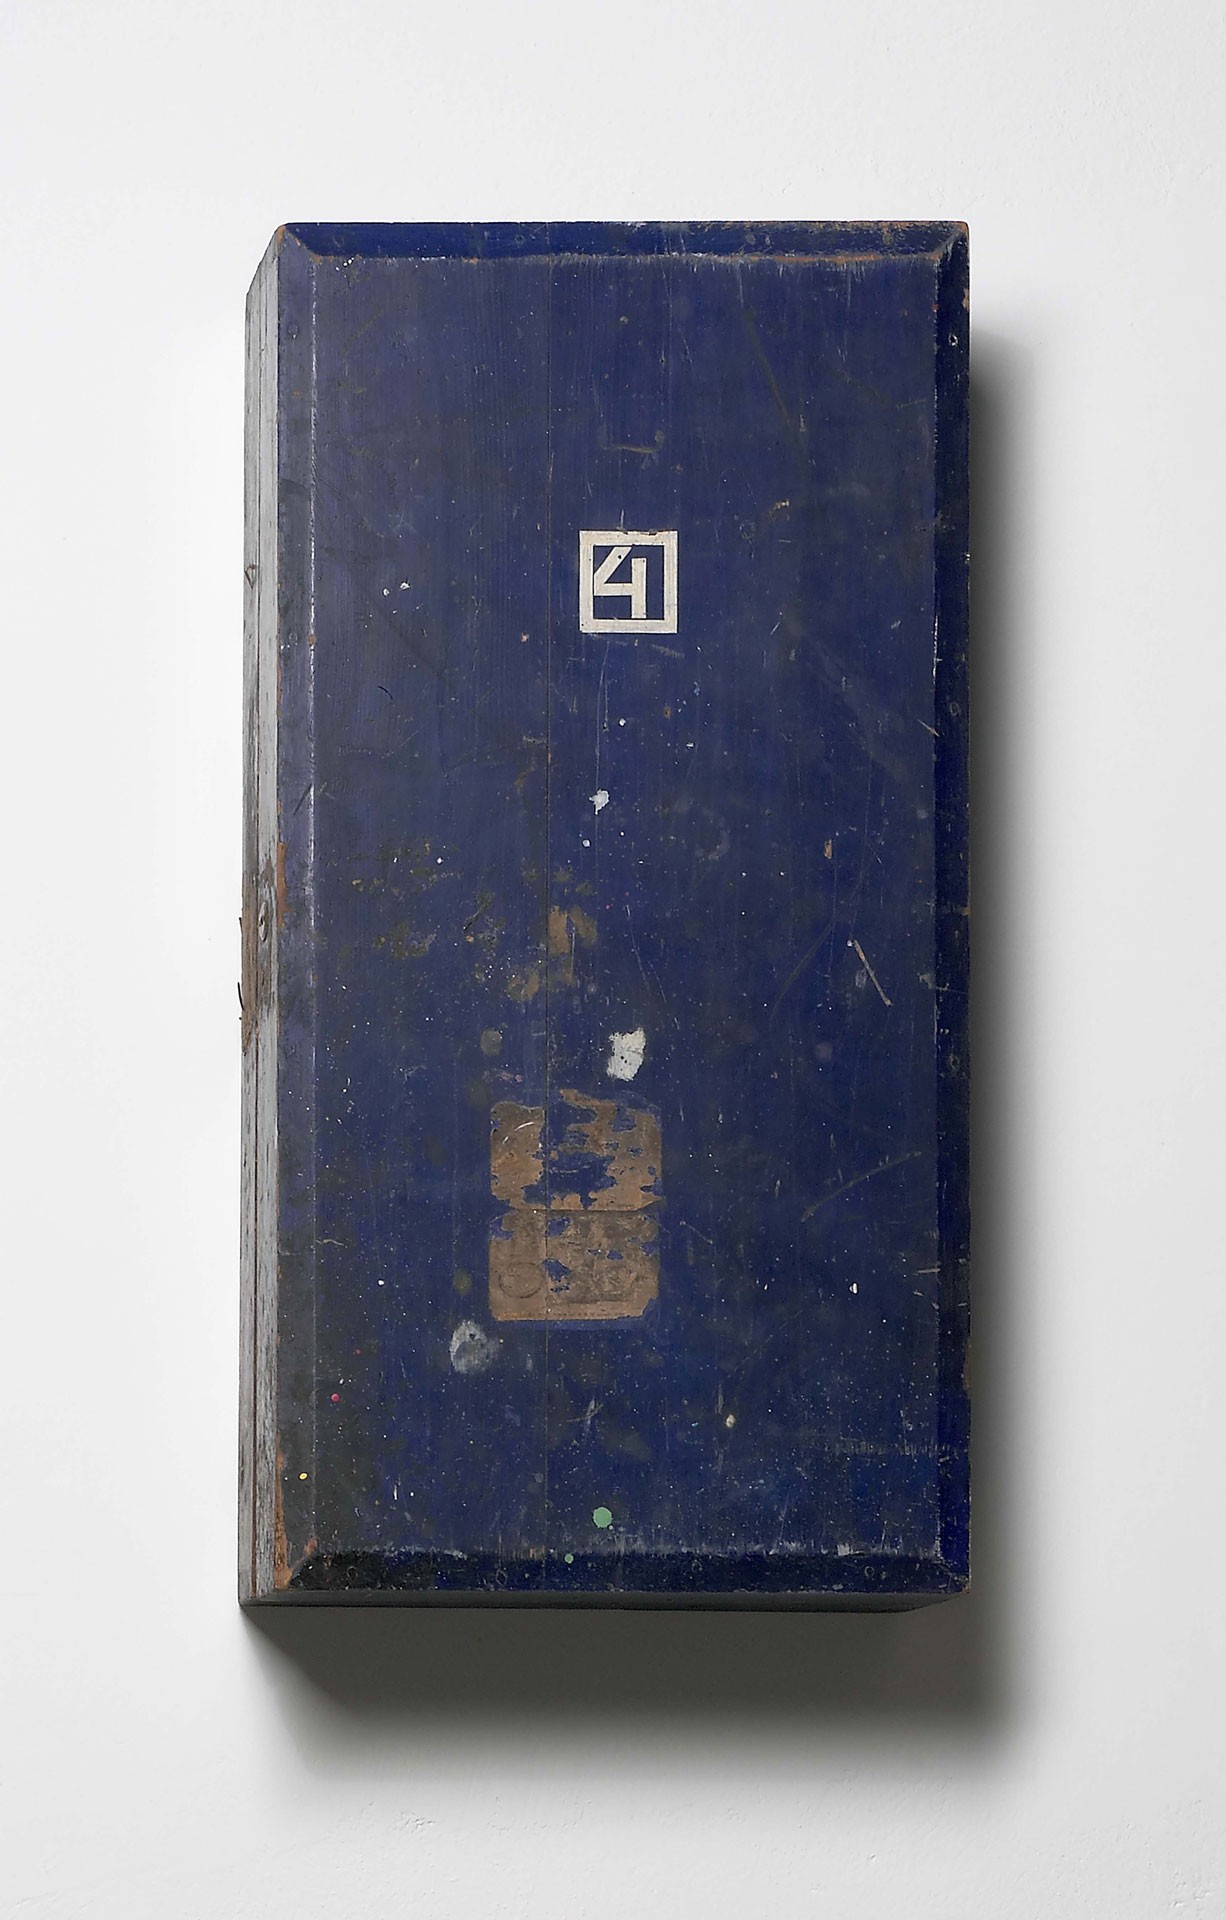 <BODY><div>Josef Hoffmann or Koloman Moser, Toolbox no. 4 from the WW furniture workshop, 1904</div><div>Softwood, painted blue</div><div>Ernst Ploil Collection</div><div>© MAK/Georg Mayer</div><div> </div></BODY>